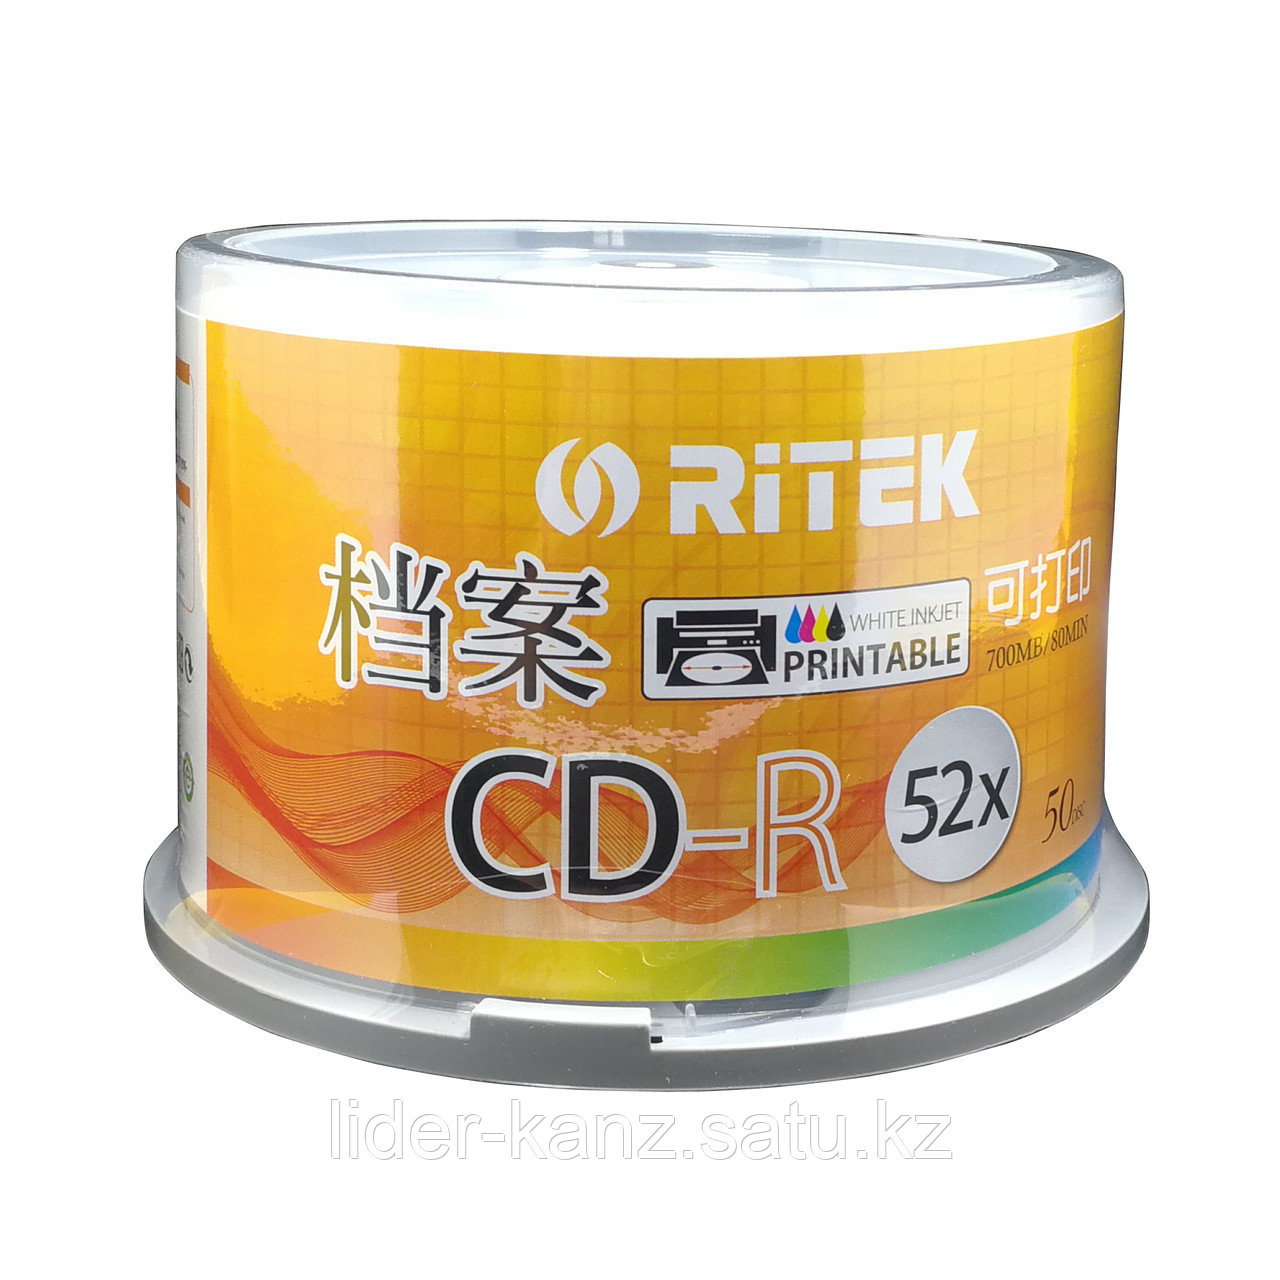 Диски для печати Ritek Printable CD-R 52X 700 mb 80 min